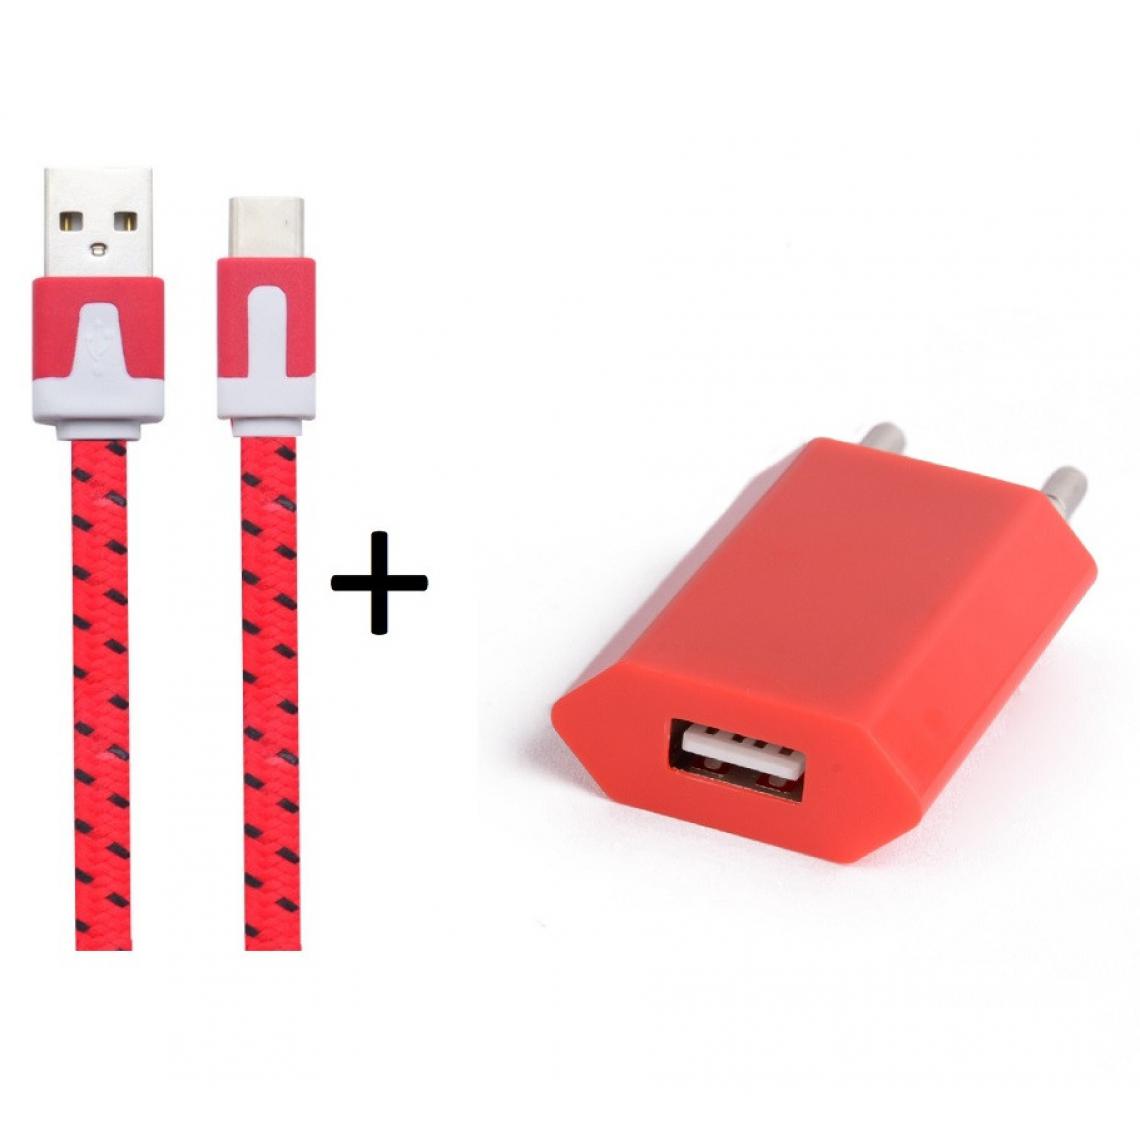 Shot - Pack Chargeur pour JBL Charge 4 Smartphone Type C (Cable Noodle 1m Chargeur + Prise Secteur USB) Murale Android (ROUGE) - Chargeur secteur téléphone